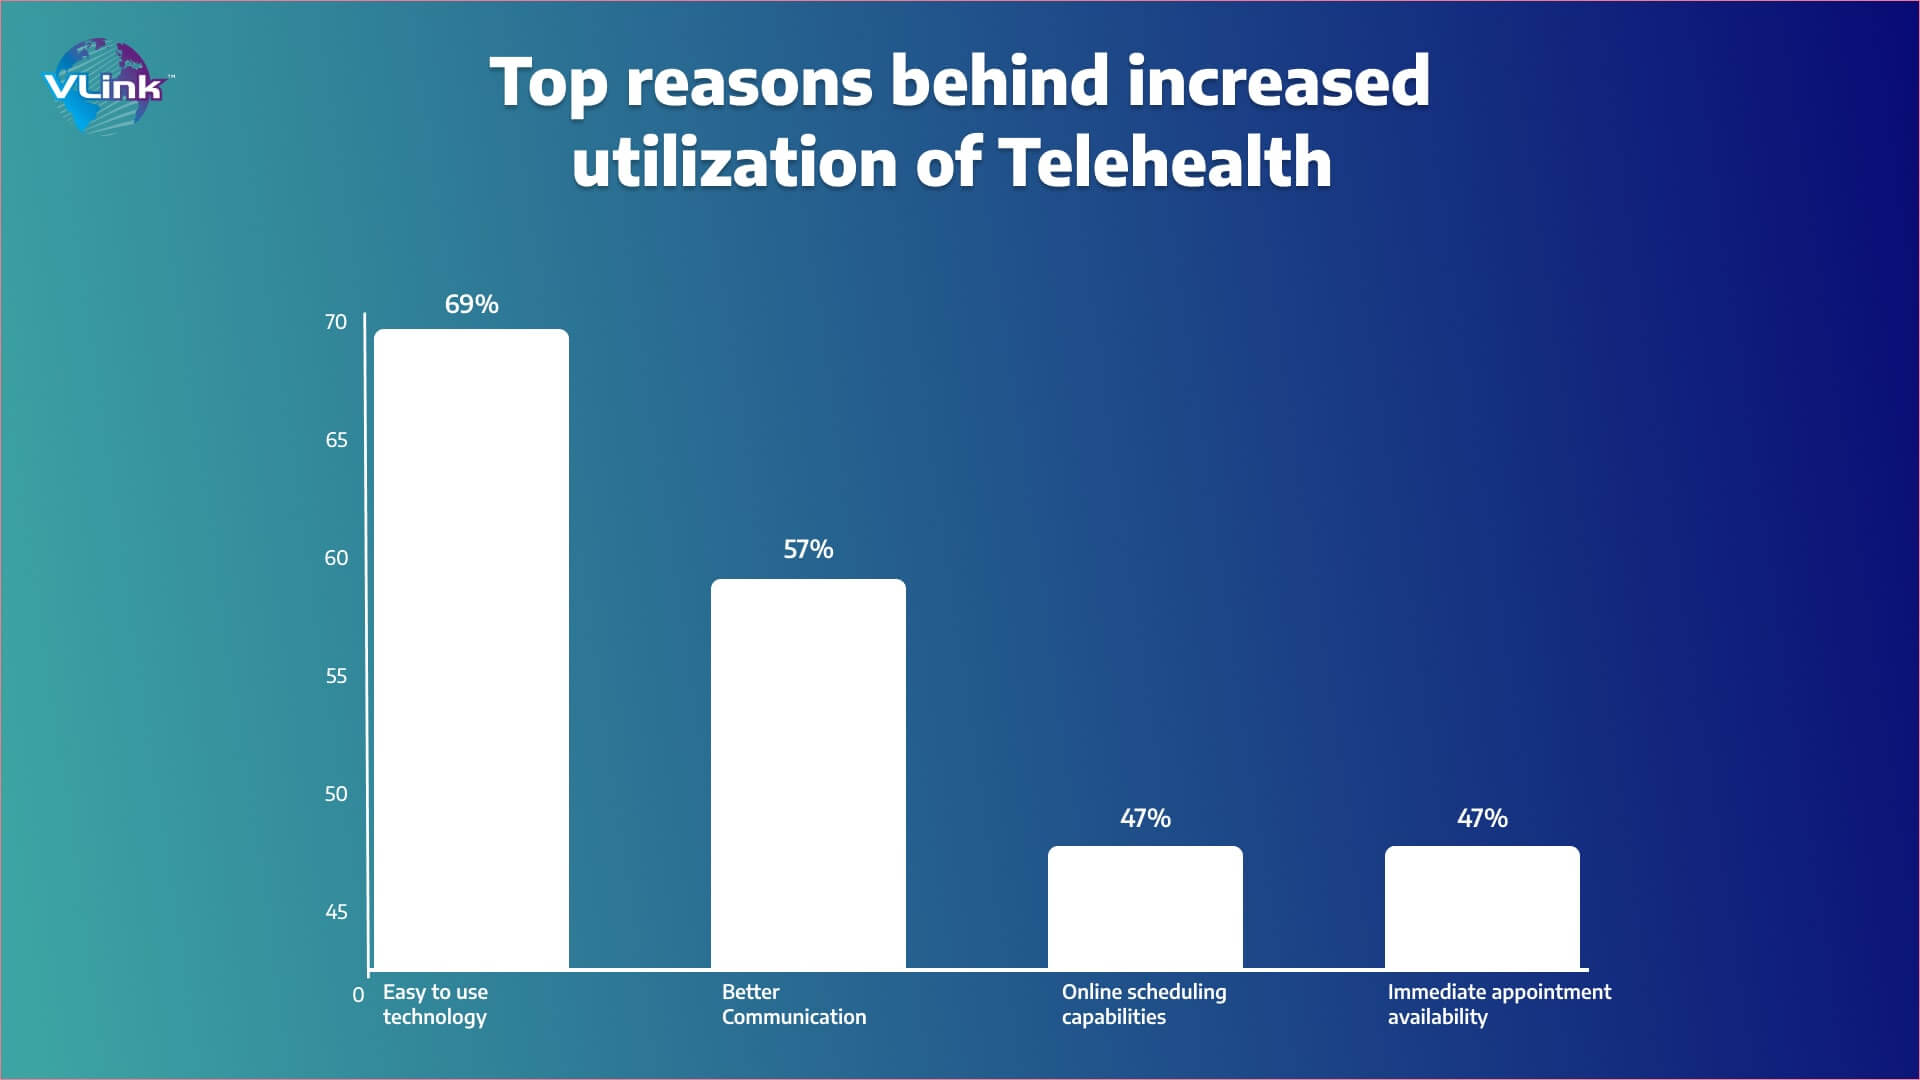 Top reasons behind increased utilization of Telehealthc